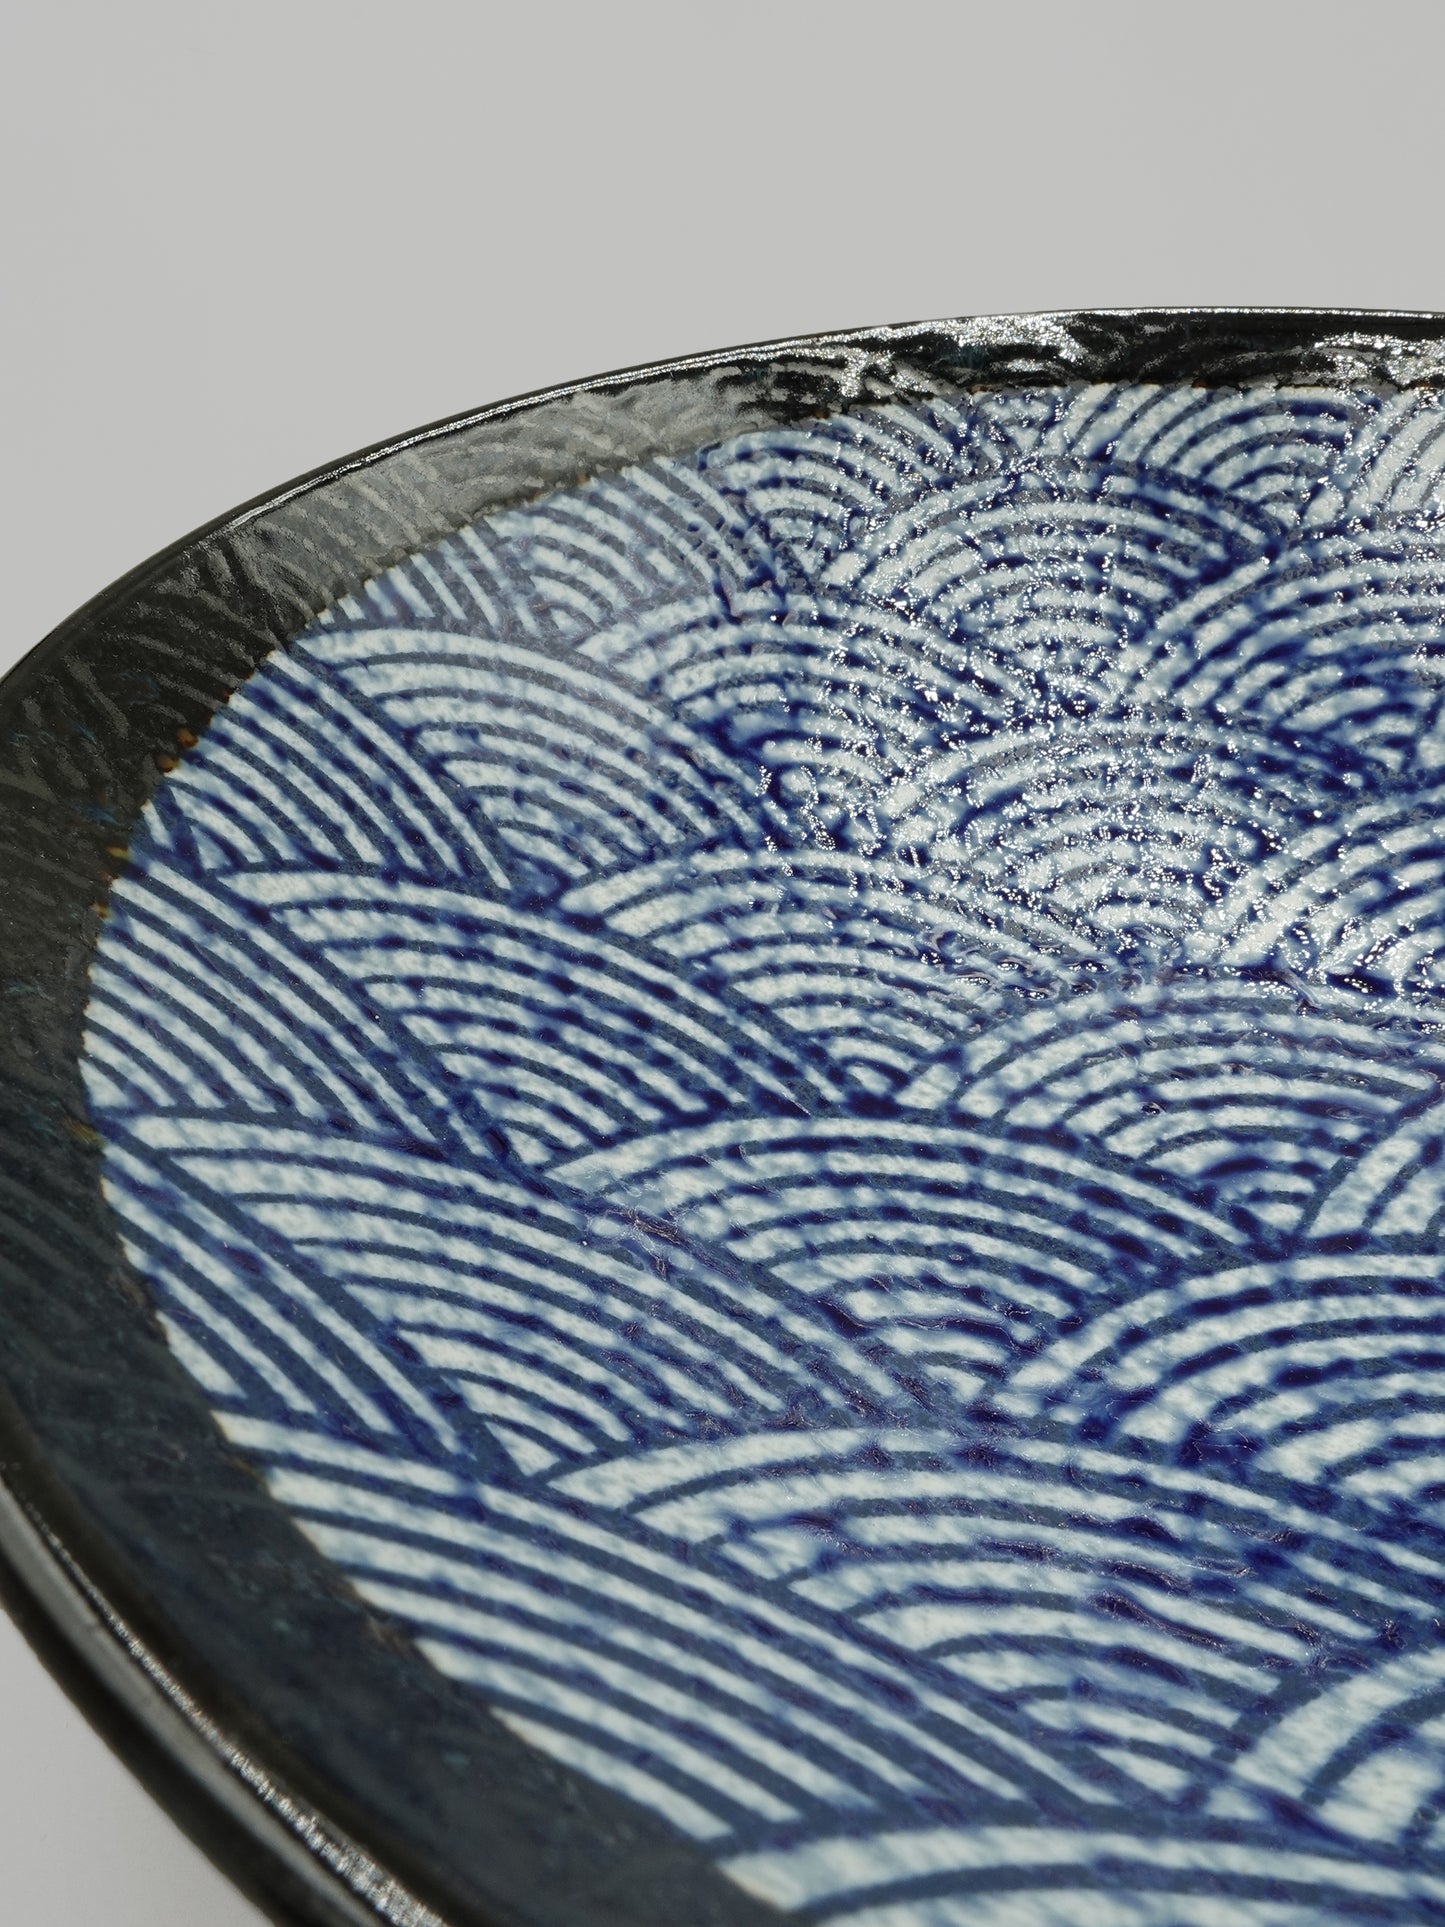 浪紋 日製9吋 拉麵碗